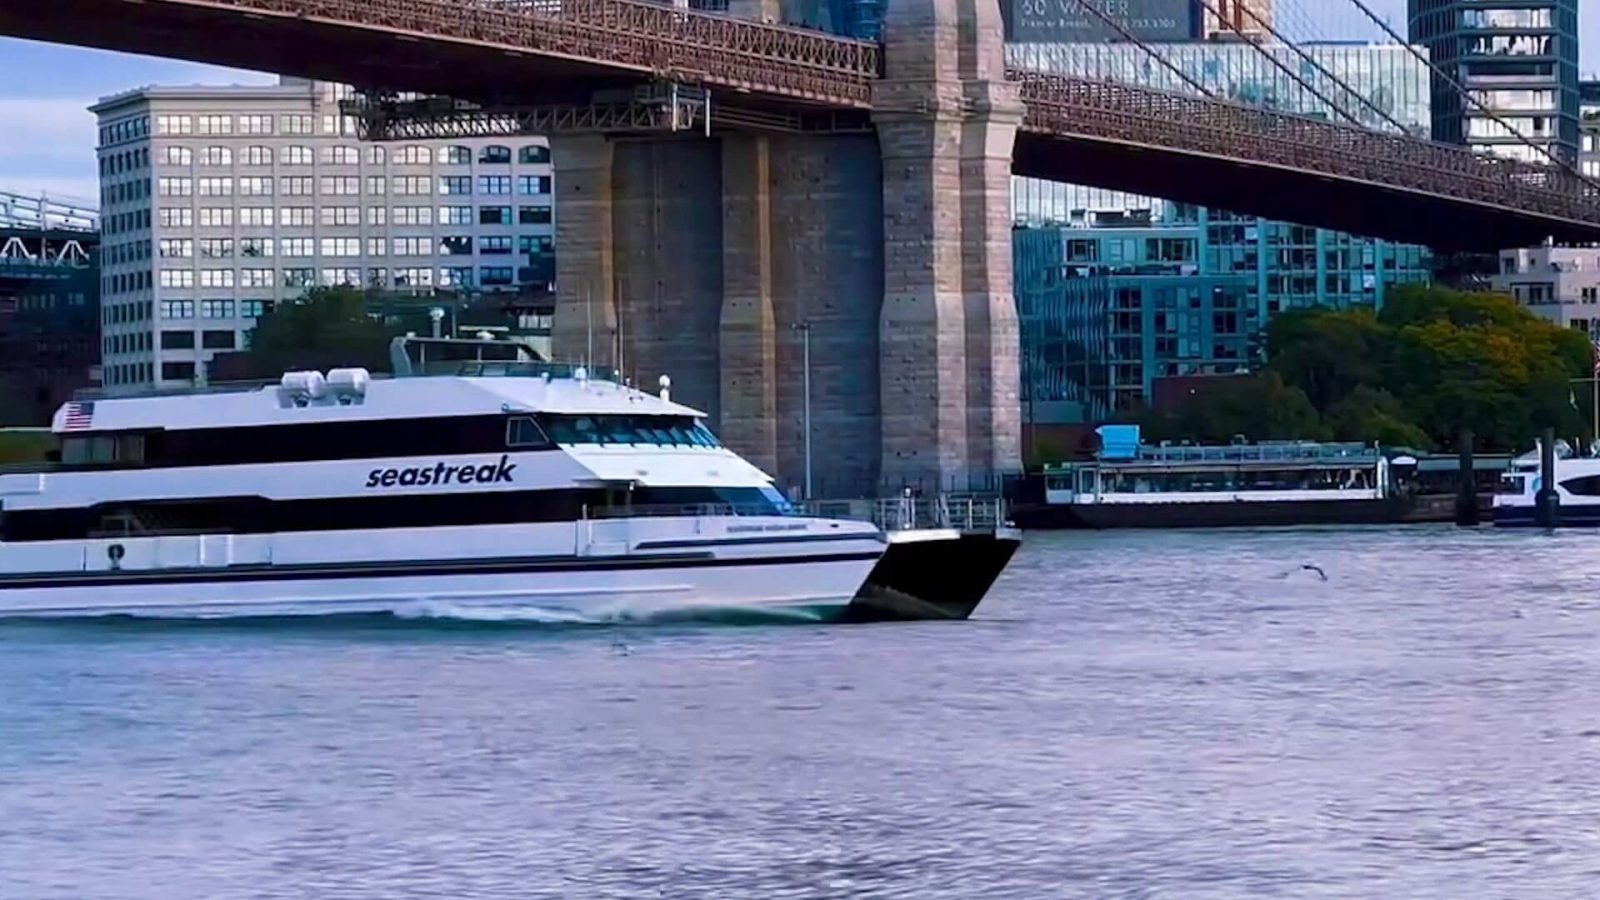 Seastreak Ferries  Santa Brunch Cruise in NYC Harbor (Departing Highlands,  NJ)